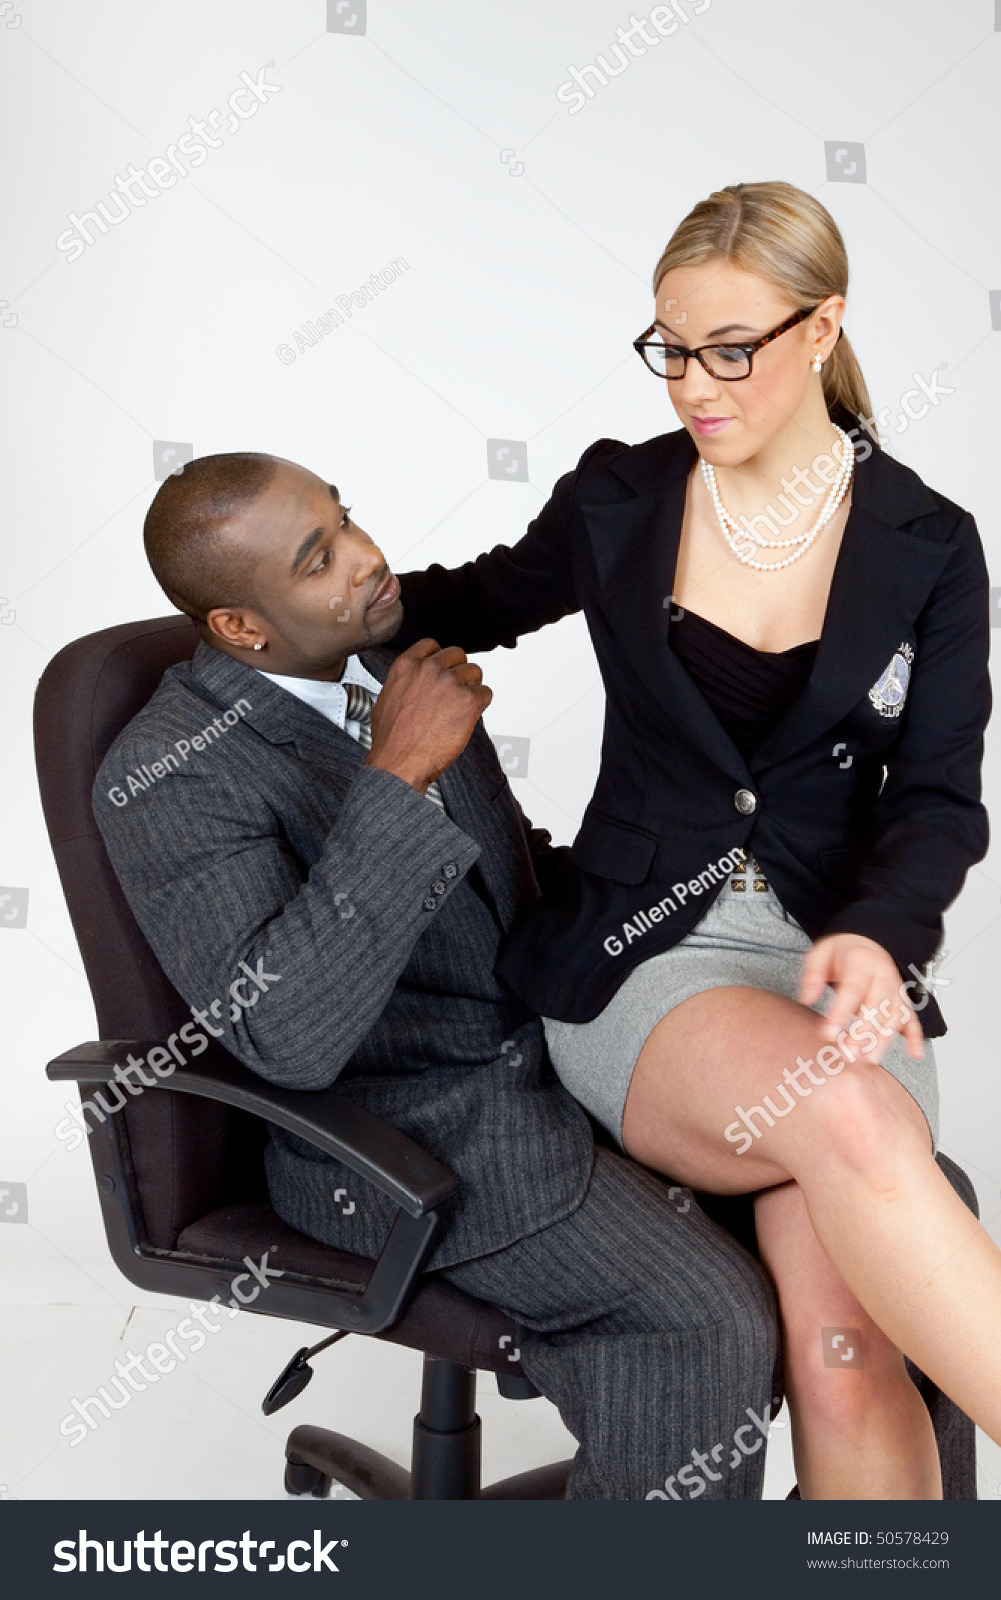 Темнокожая молодая секретарша шалит перед своим боссом